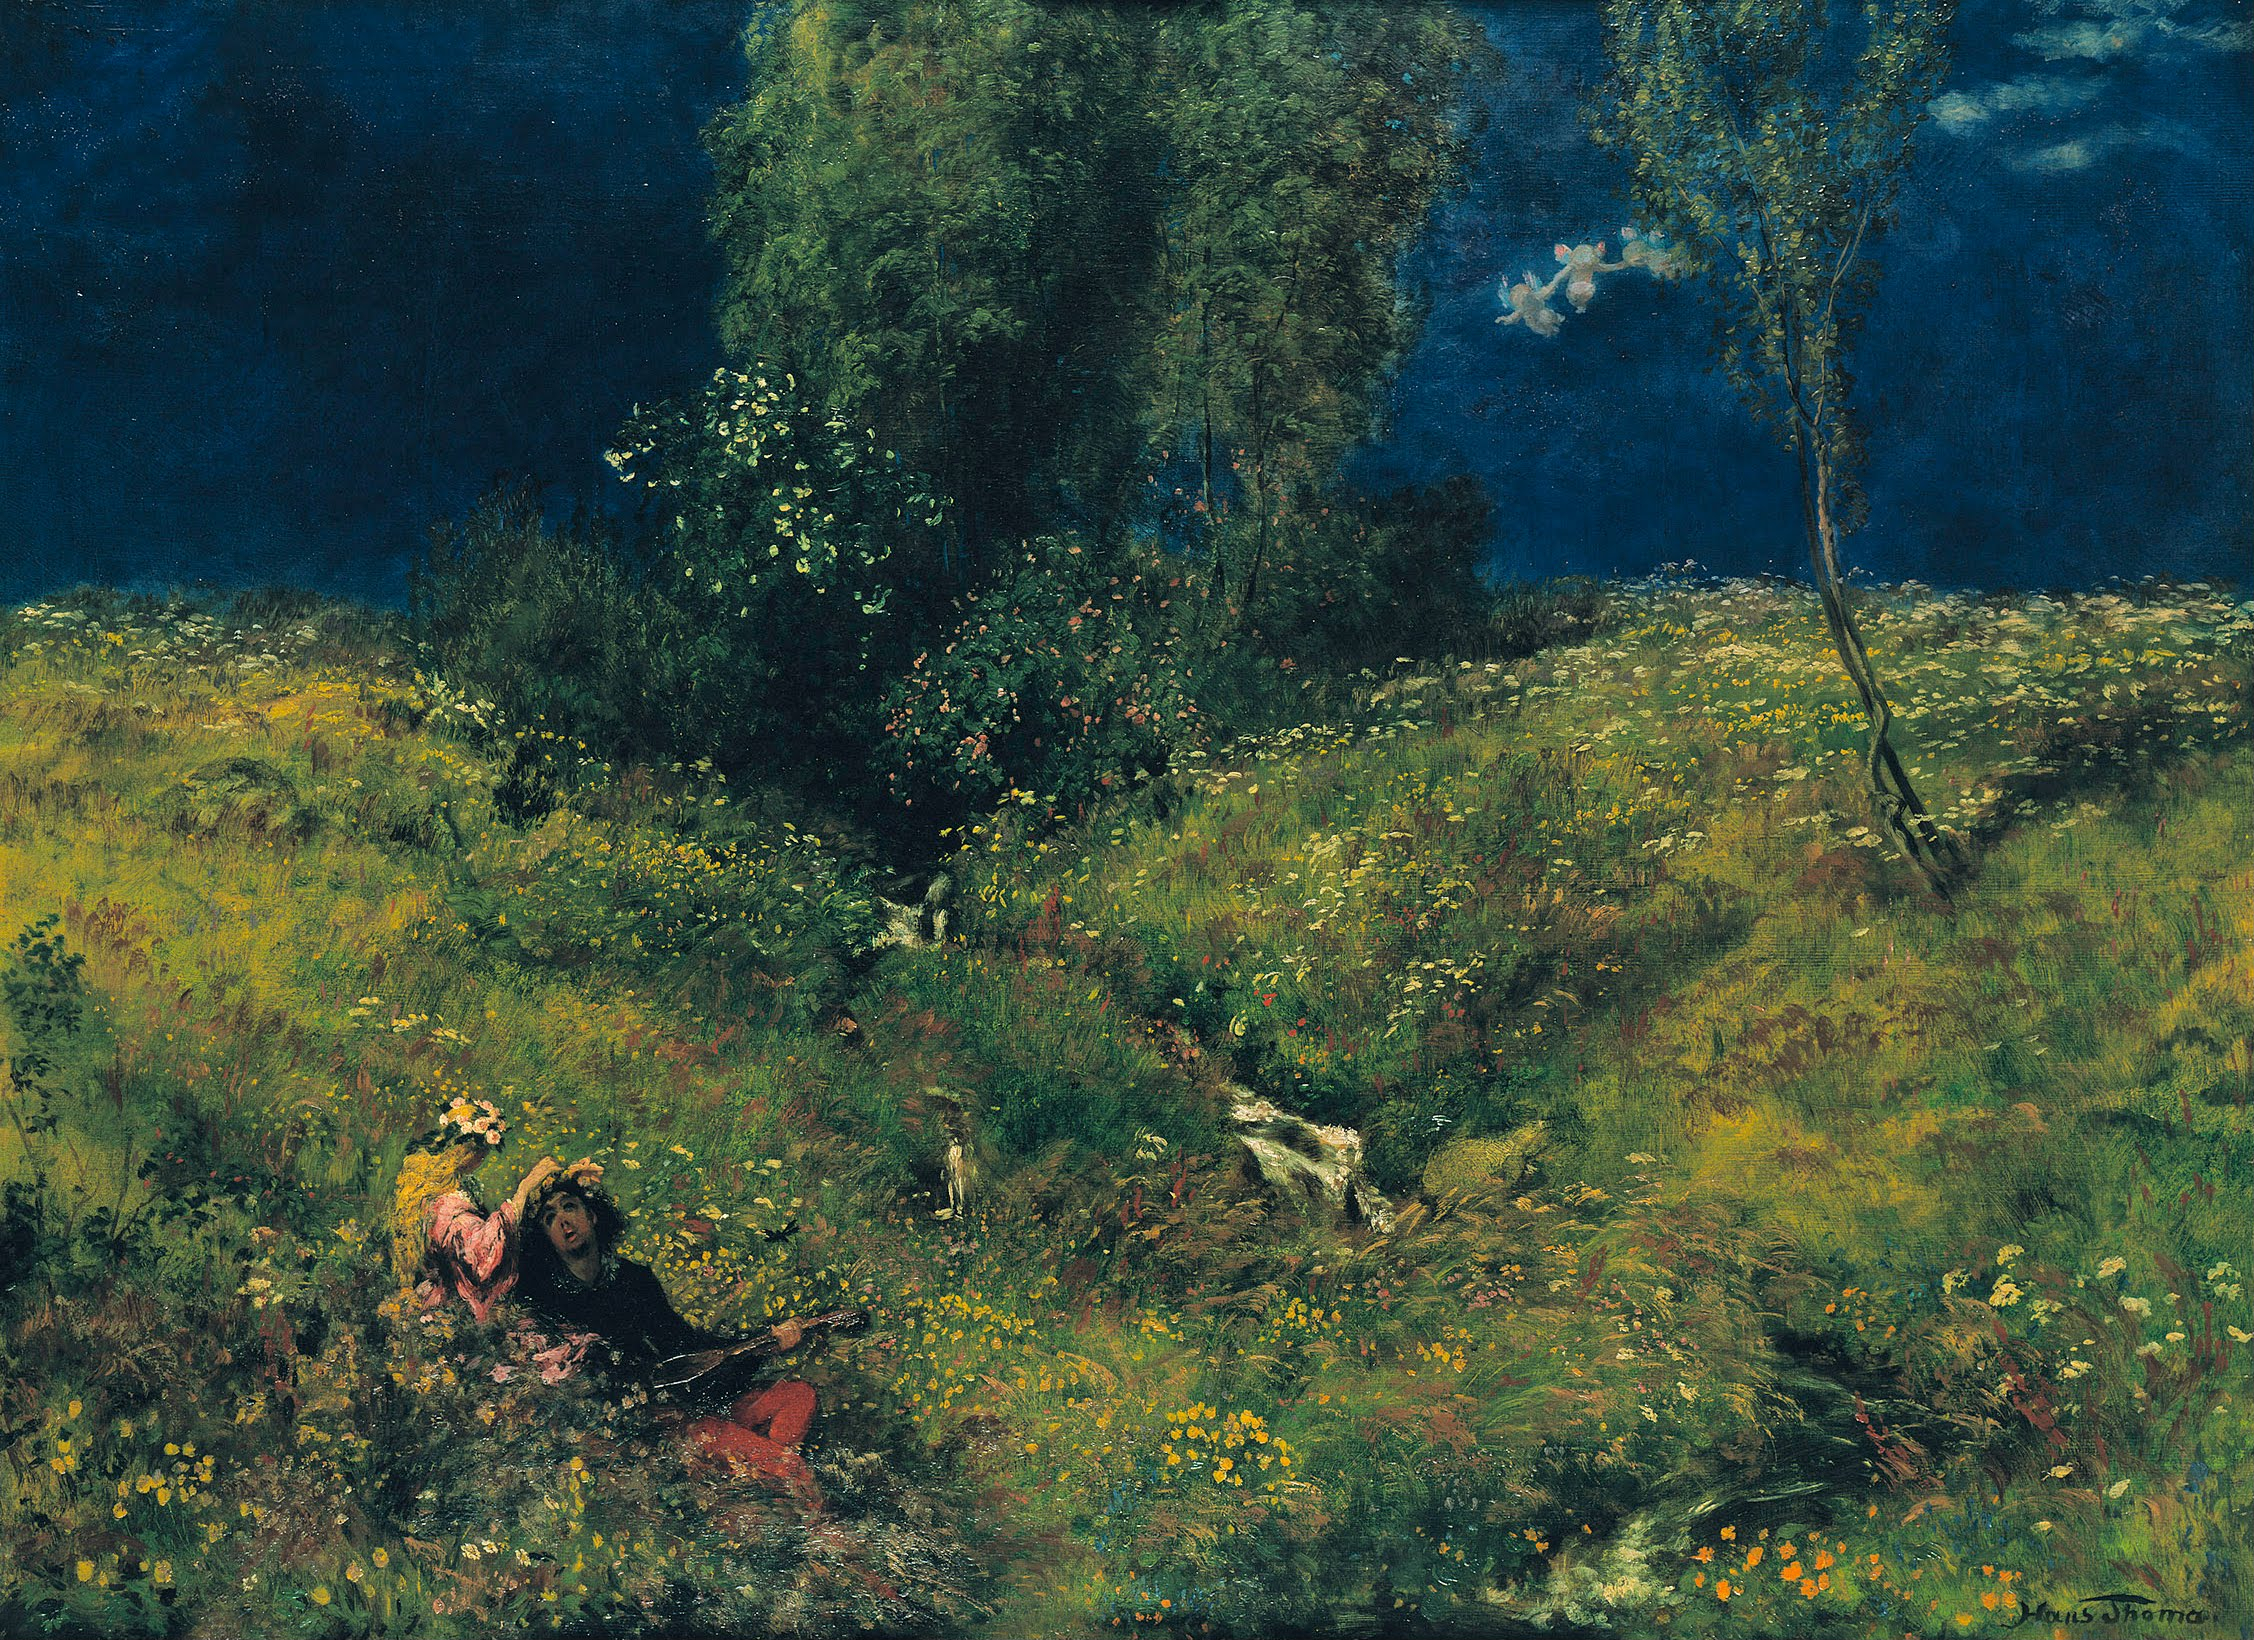 Léto by Hans Thoma - 1872 - 104 x 76,0 cm 